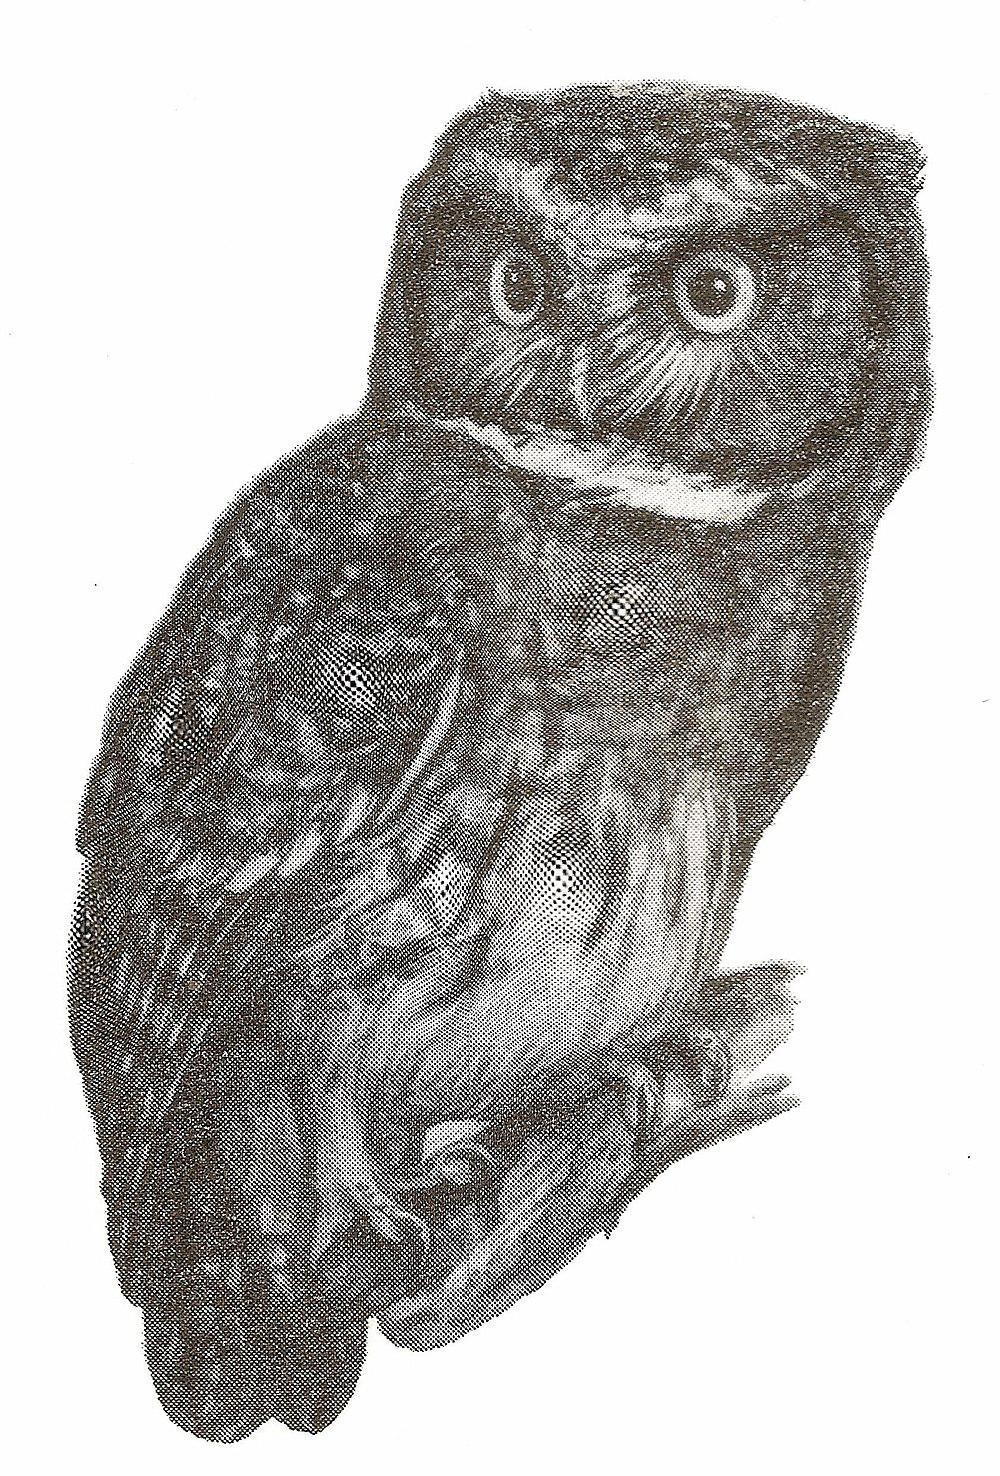 白喉角鸮 / White-throated Screech Owl / Megascops albogularis